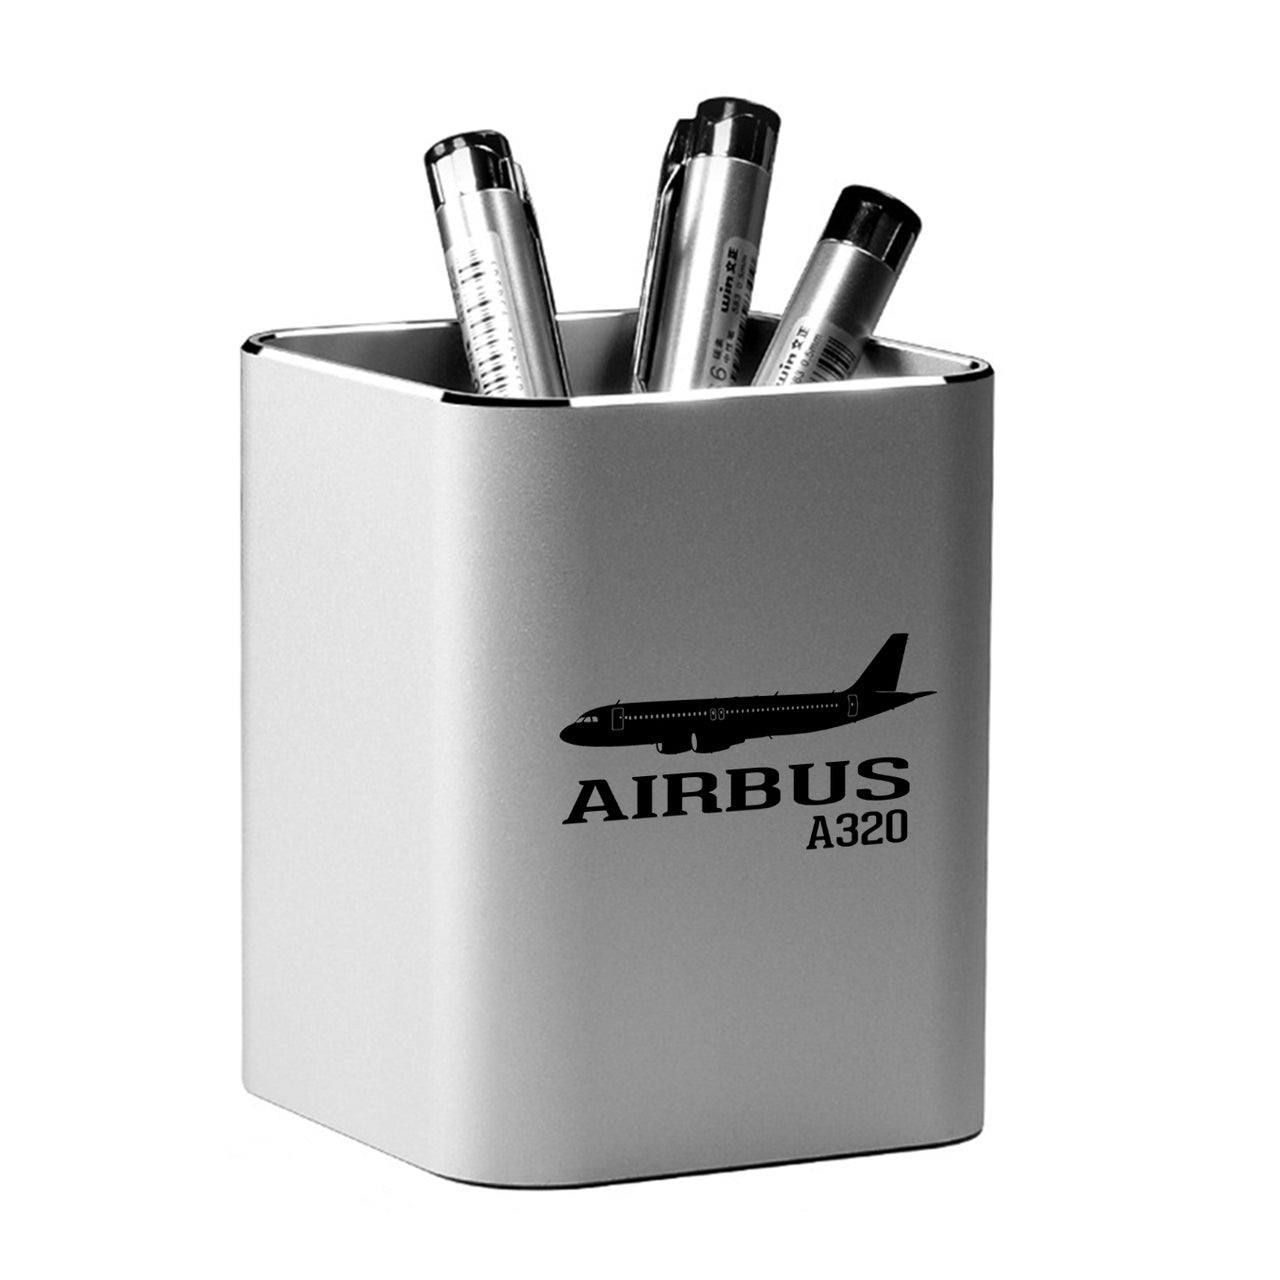 Airbus A320 Printed Designed Aluminium Alloy Pen Holders